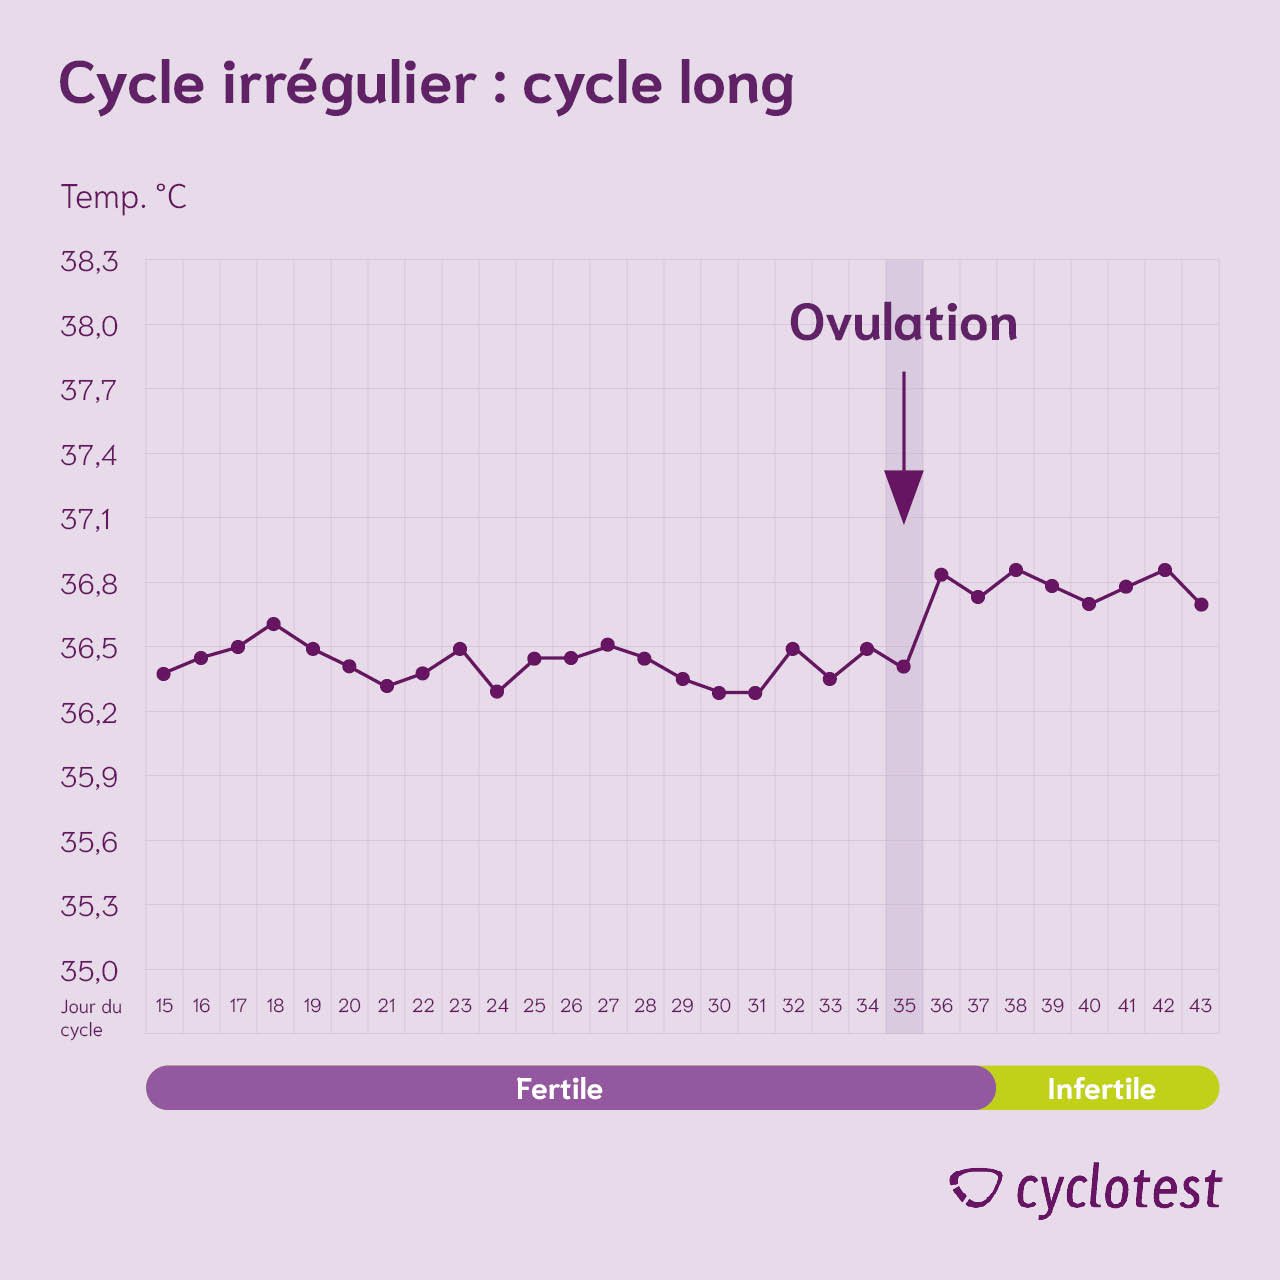 Cycle irrégulier très long avec un cycle de 43 jours.